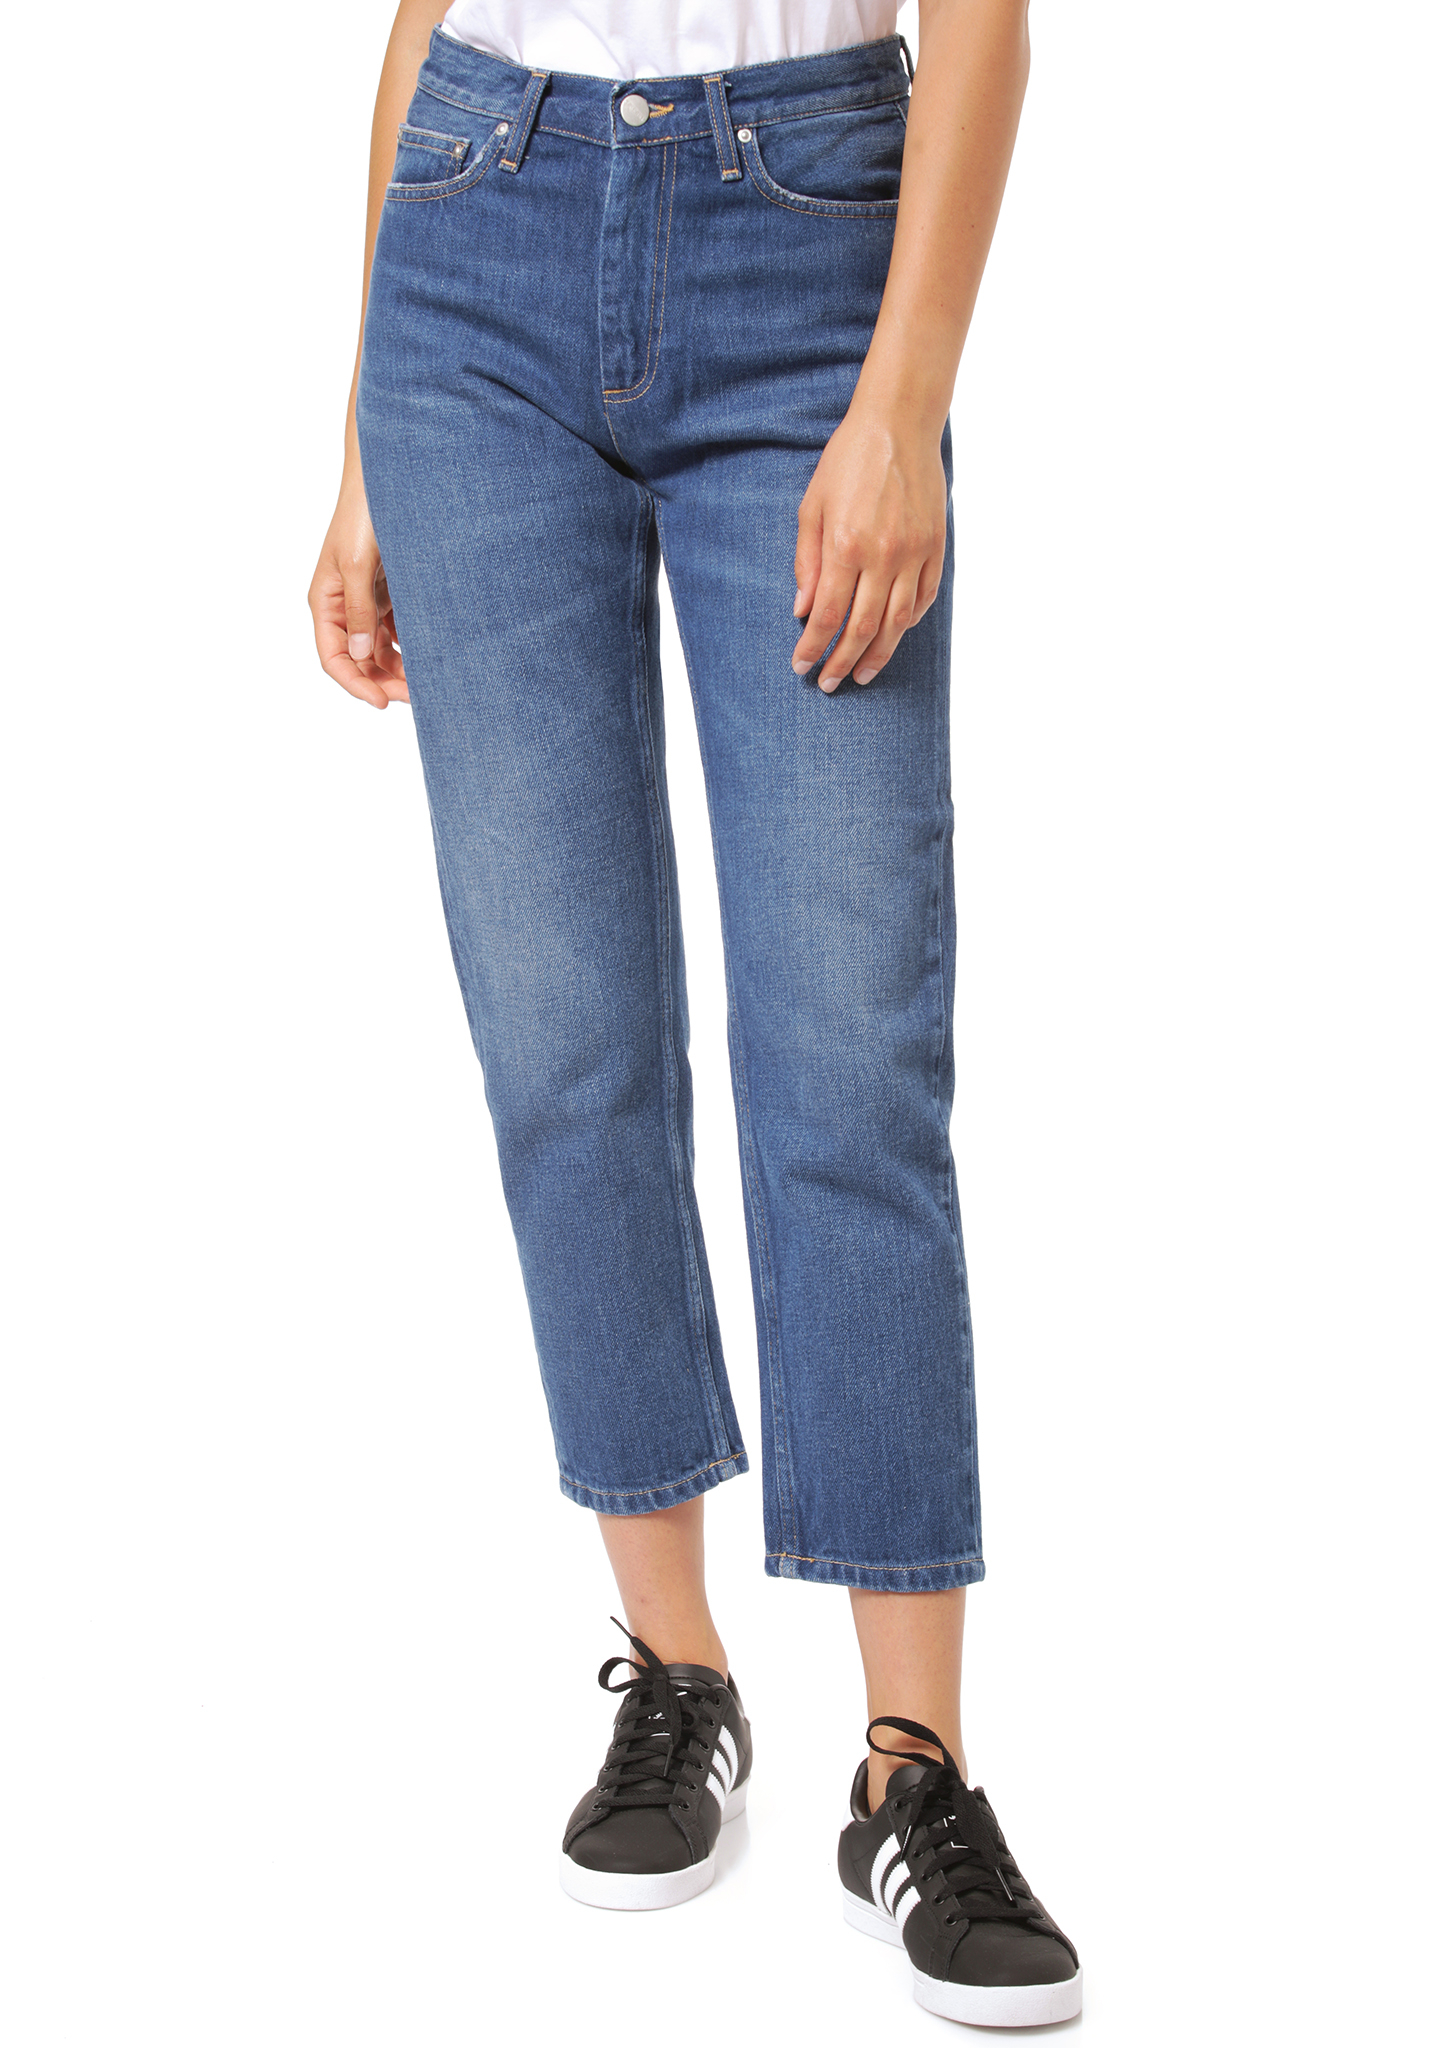 Carhartt WIP Page Carrot Ankle Slim Fit Jeans blauschwarz steingewaschen 30/XX